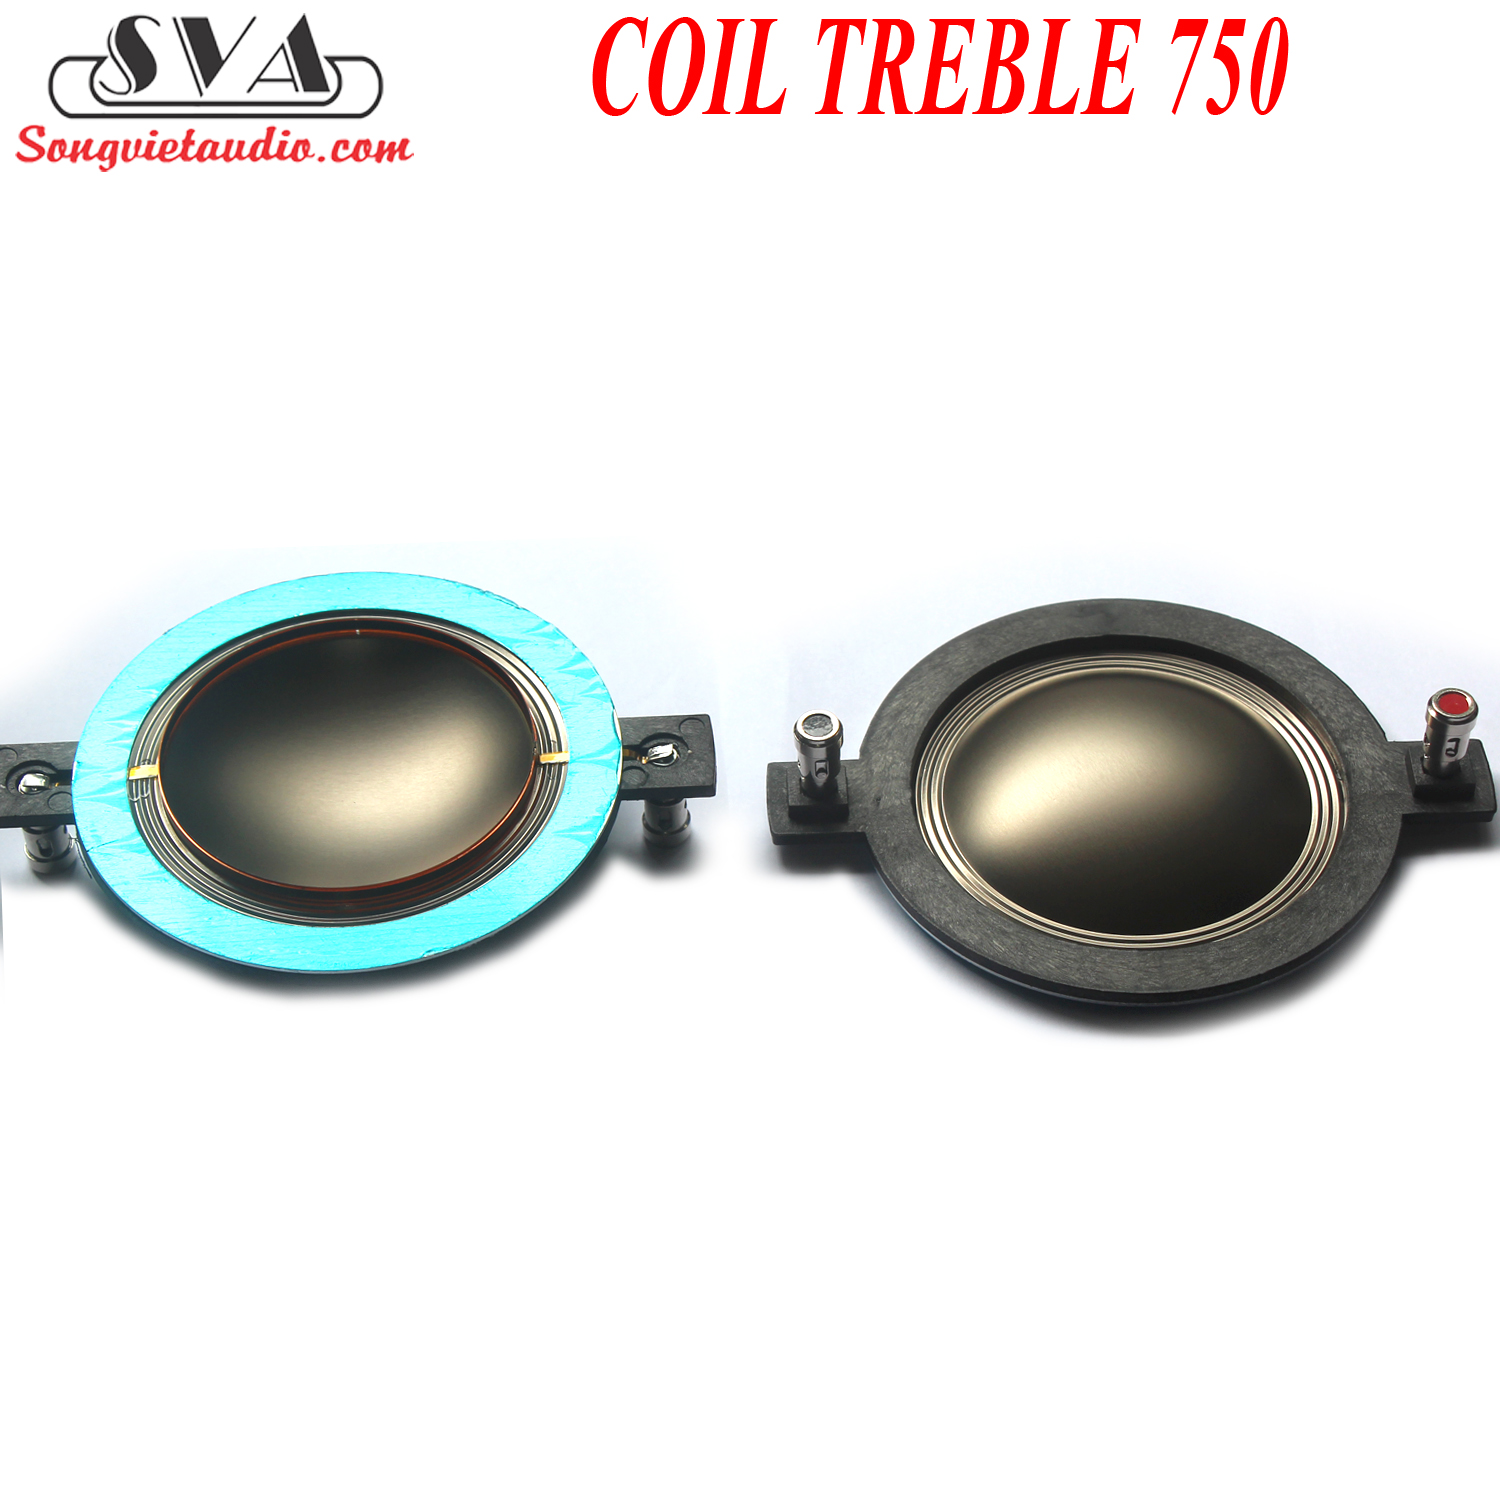 COIL TREBLE 750